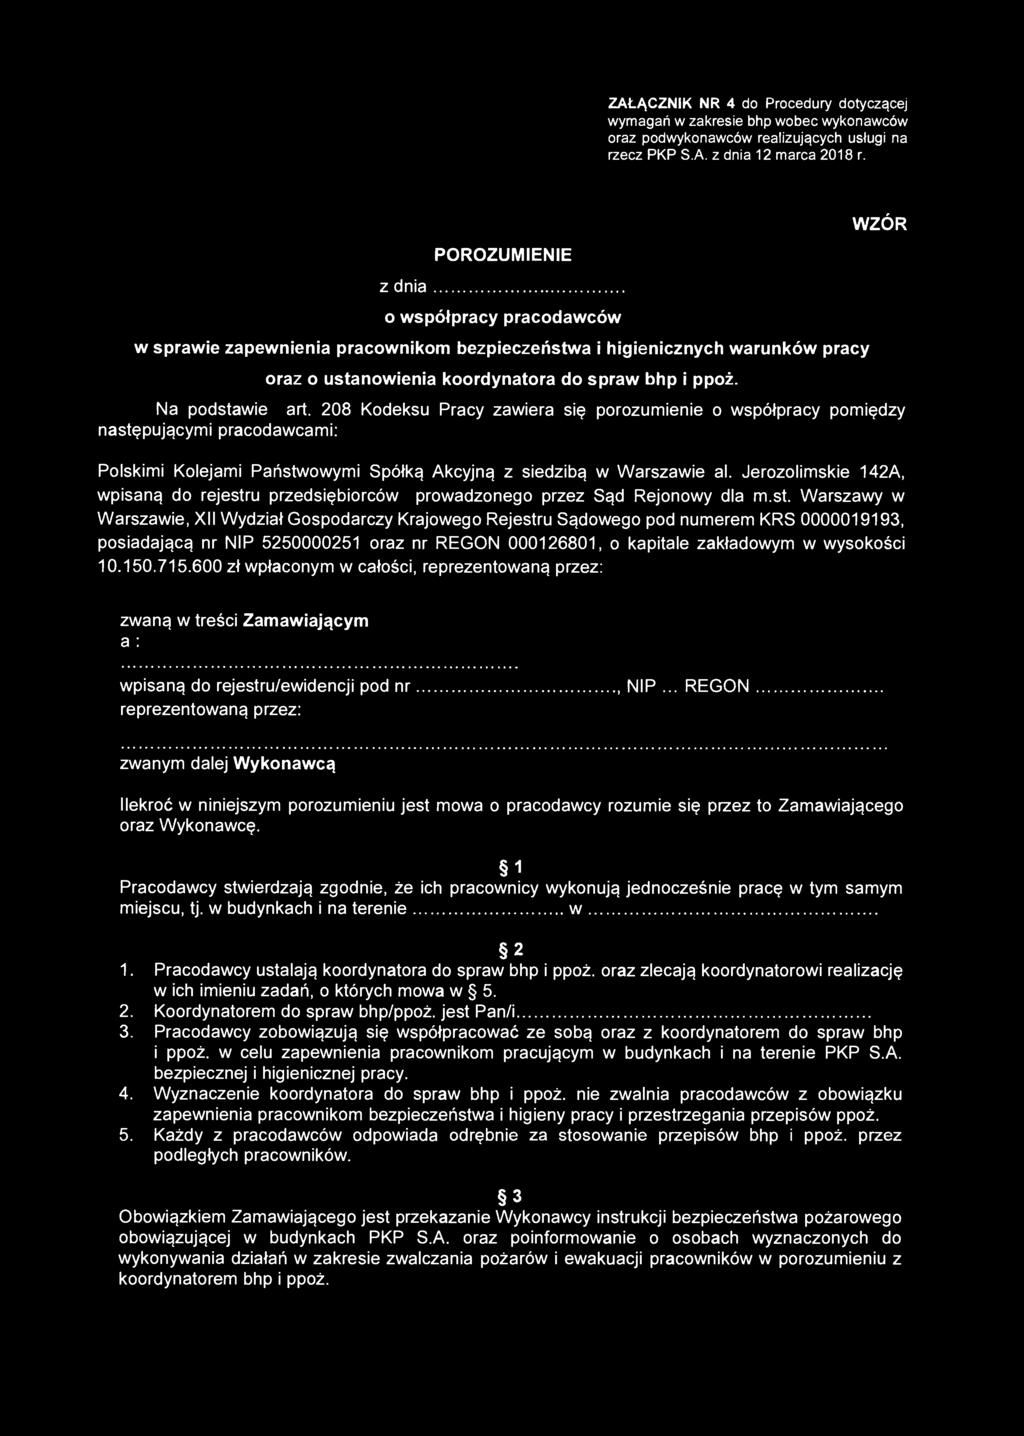 WZÓR Na podstawie art. 208 Kodeksu Pracy zawiera się porozumienie o współpracy pomiędzy następującymi pracodawcami: Polskimi Kolejami Państwowymi Spółką Akcyjną z siedzibą w Warszawie al.